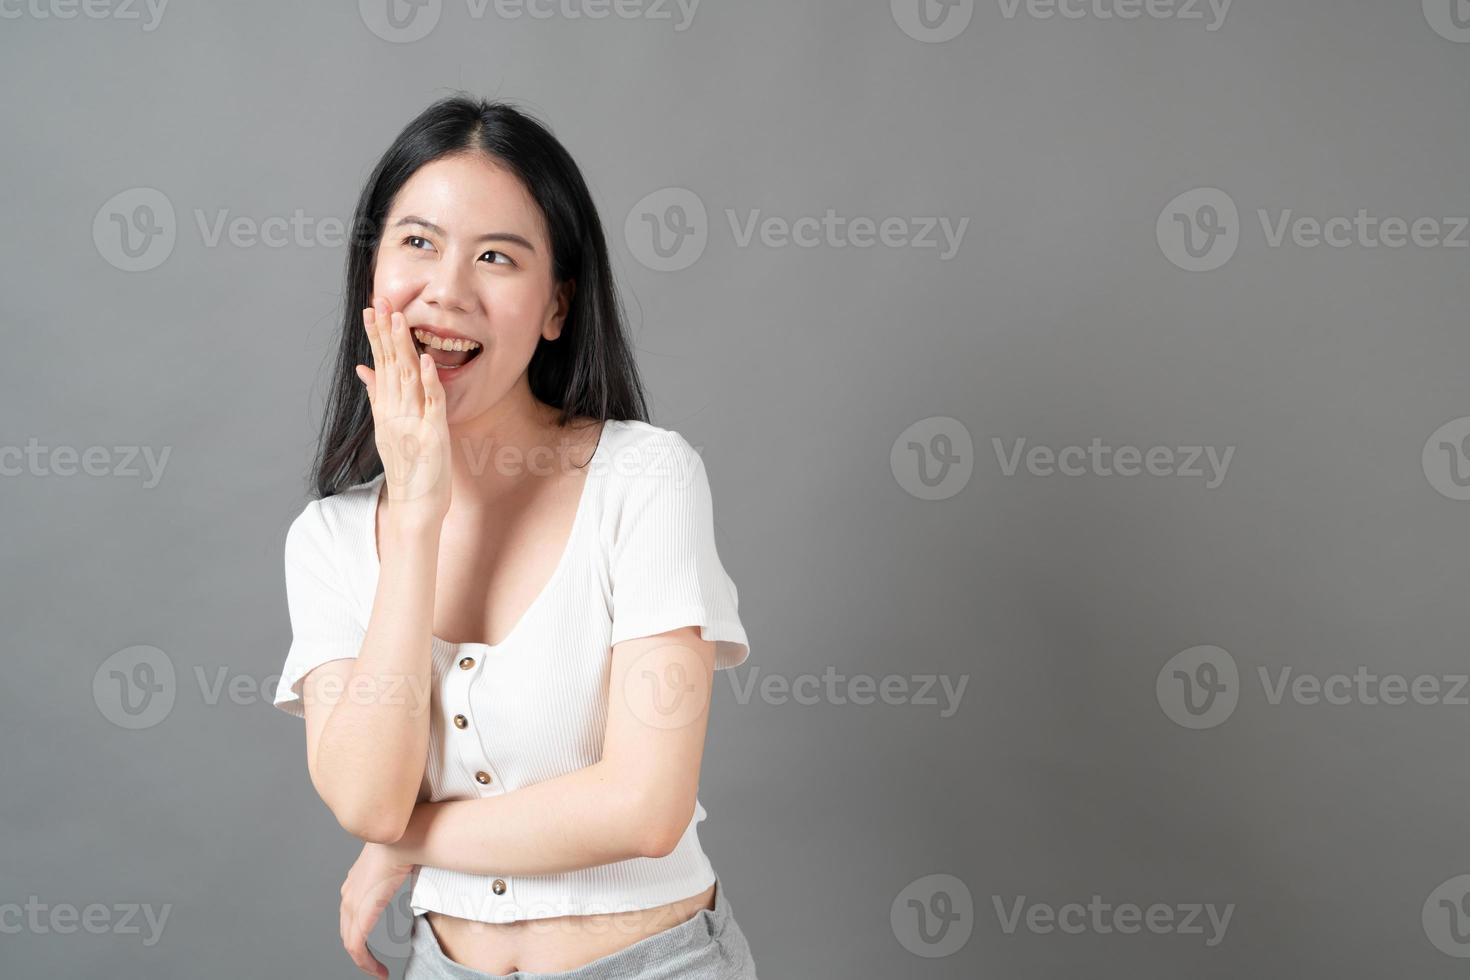 ung asiatisk kvinna med lyckligt och leende ansikte i vit skjorta på grå bakgrund foto